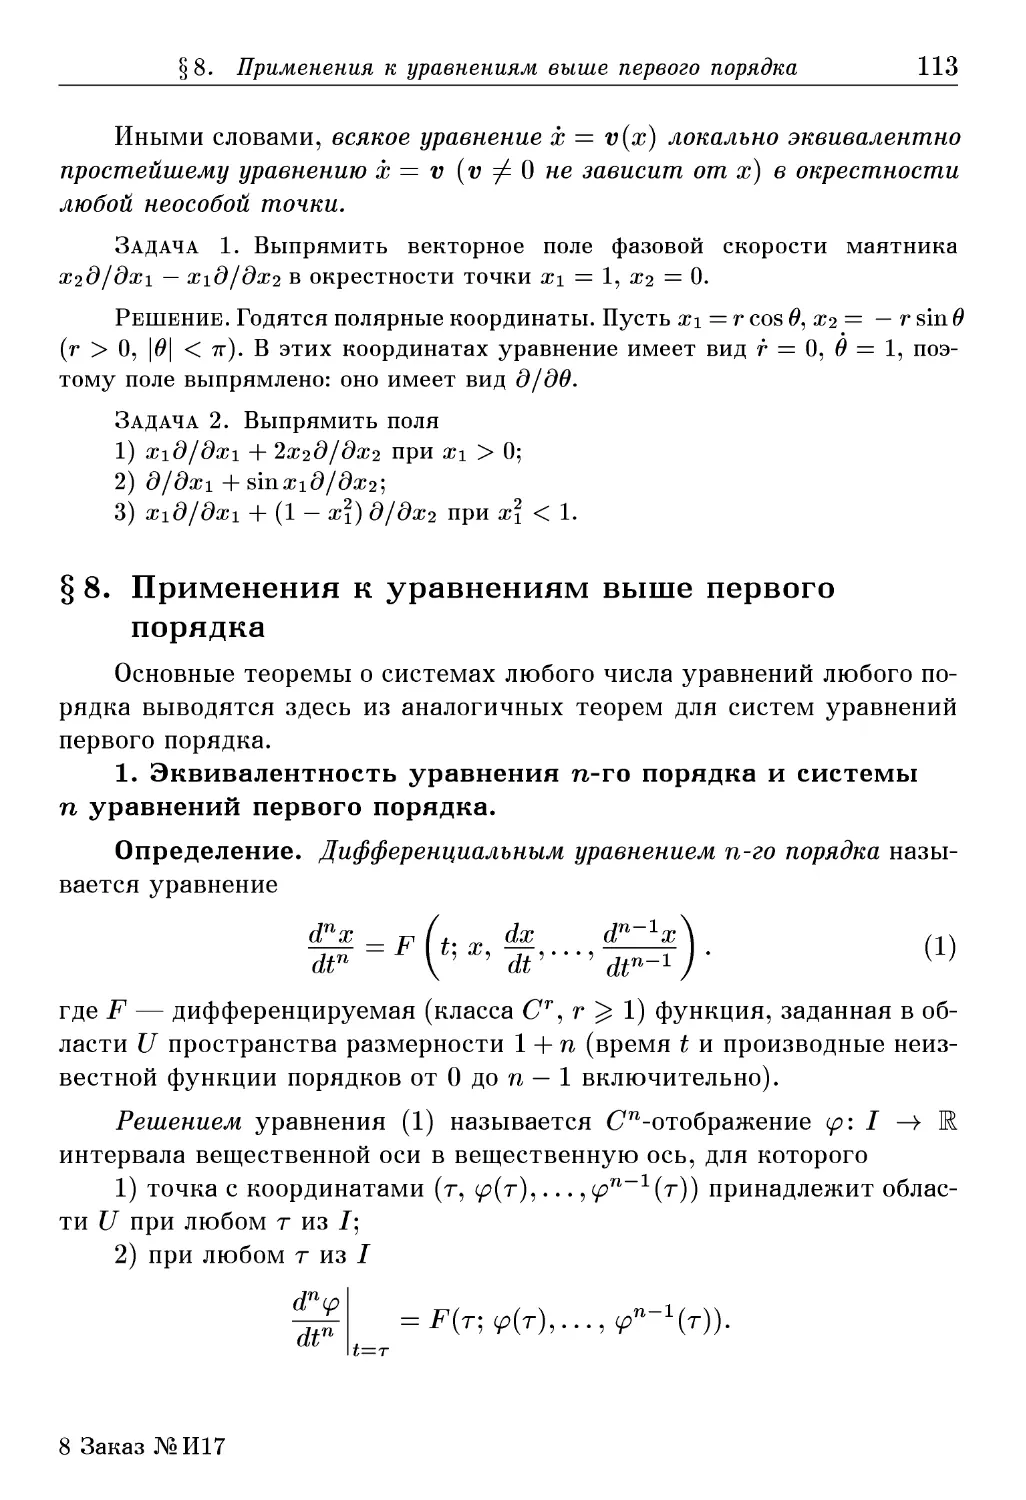 § 8. Применения к уравнениям выше первого порядка